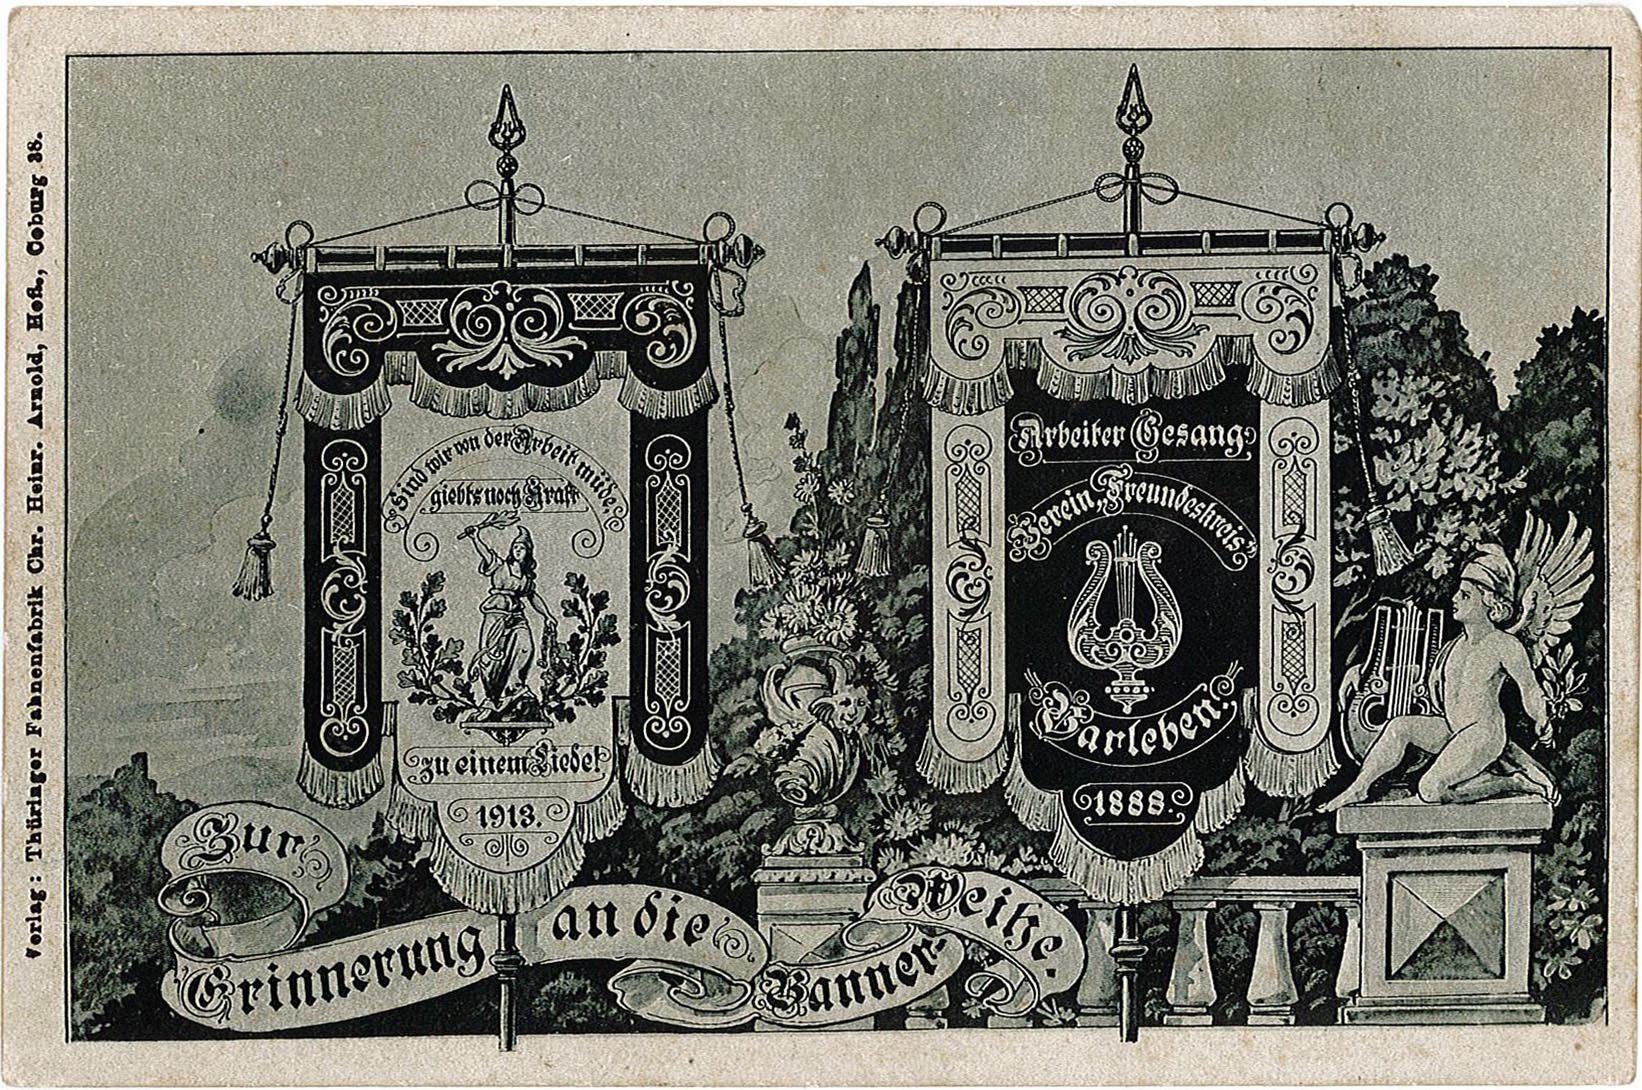 Postkarte zur Bannerweihe Arbeiter-Gesangs-Verein "Freundeskreis" Barleben, 1913 (Museum Wolmirstedt RR-F)